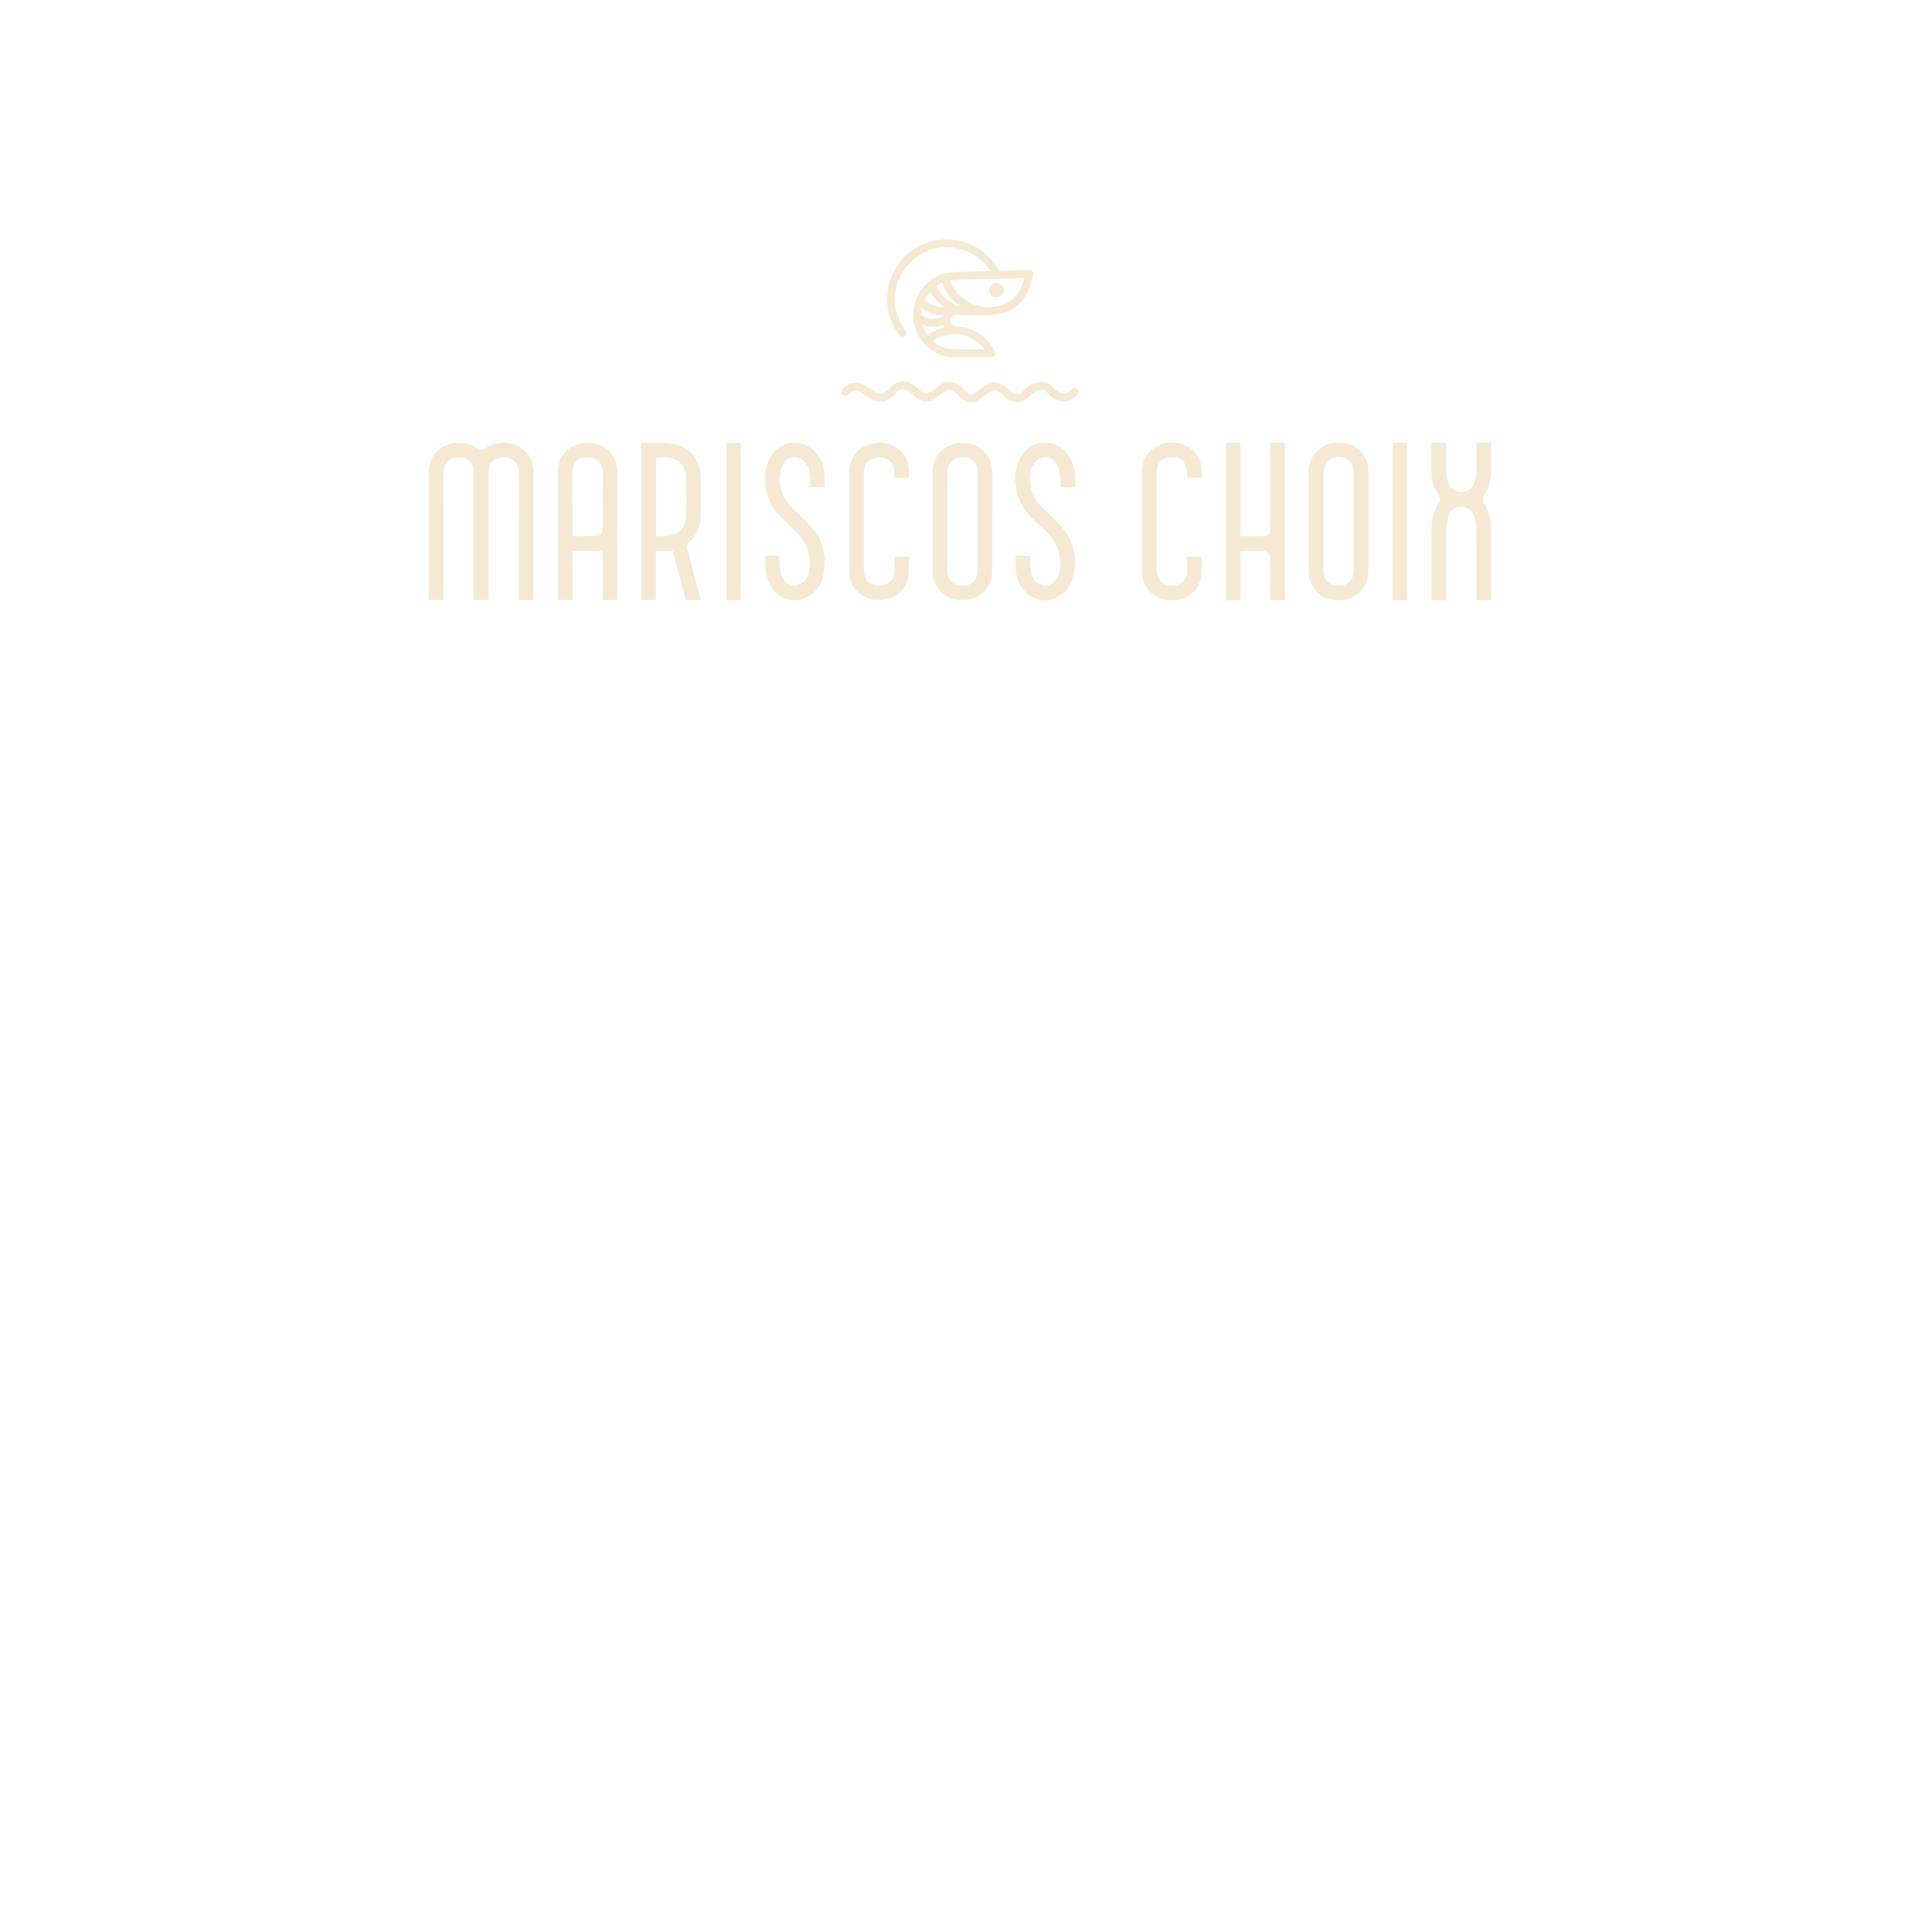 MARISCOS CHOIX